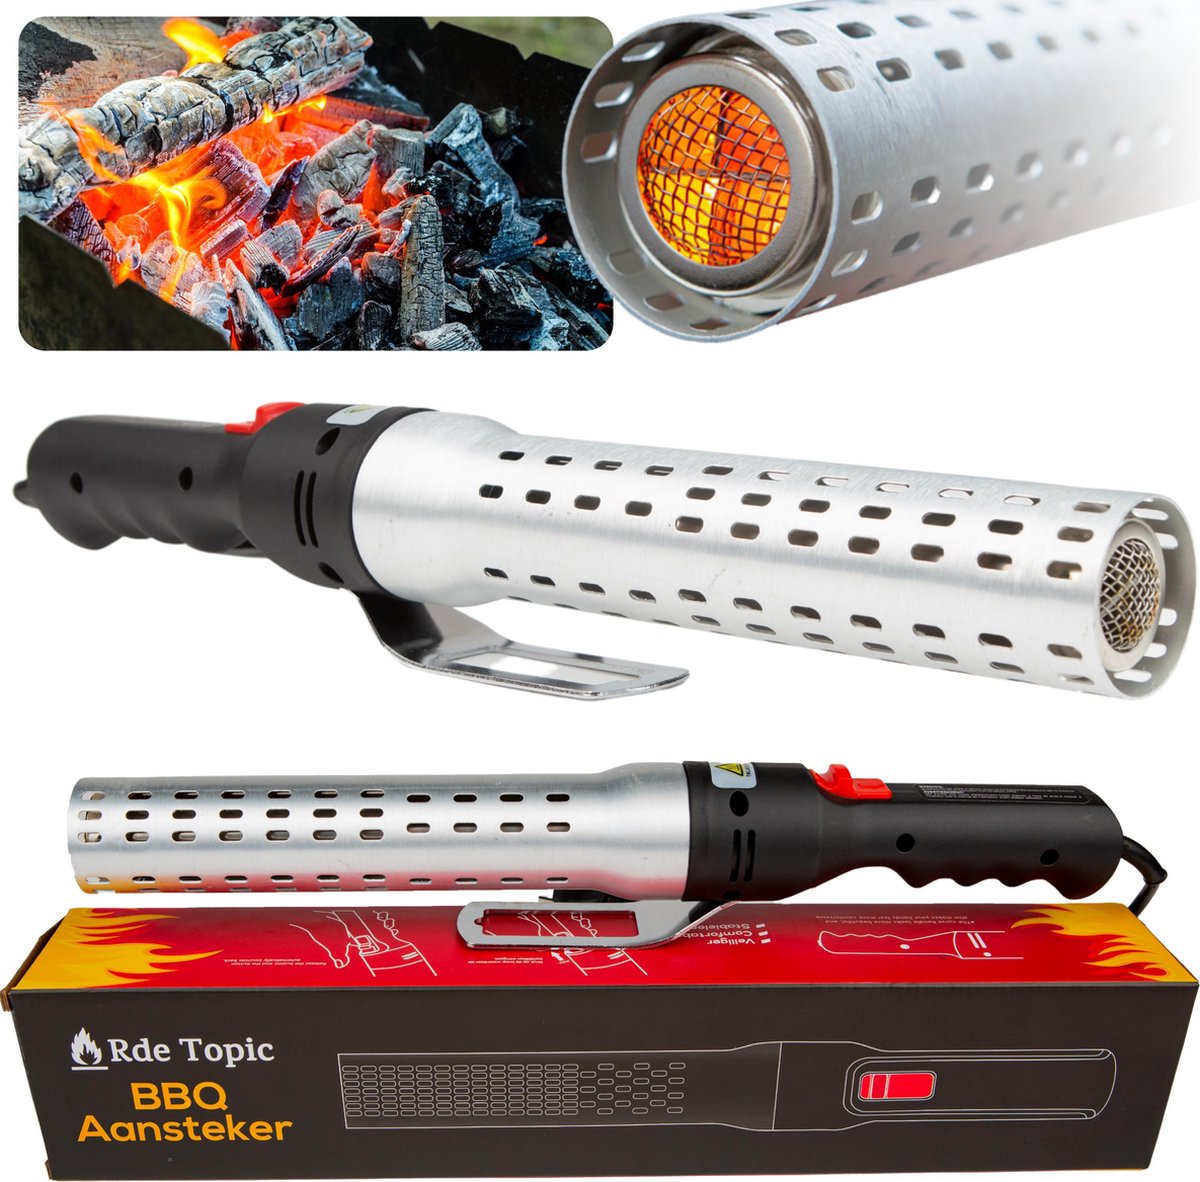 Rde Topic BBQ Aansteker - Looftlighter - BBQ Accessoires - One Minute Lighter - Rde Topic BBQ Aansteker